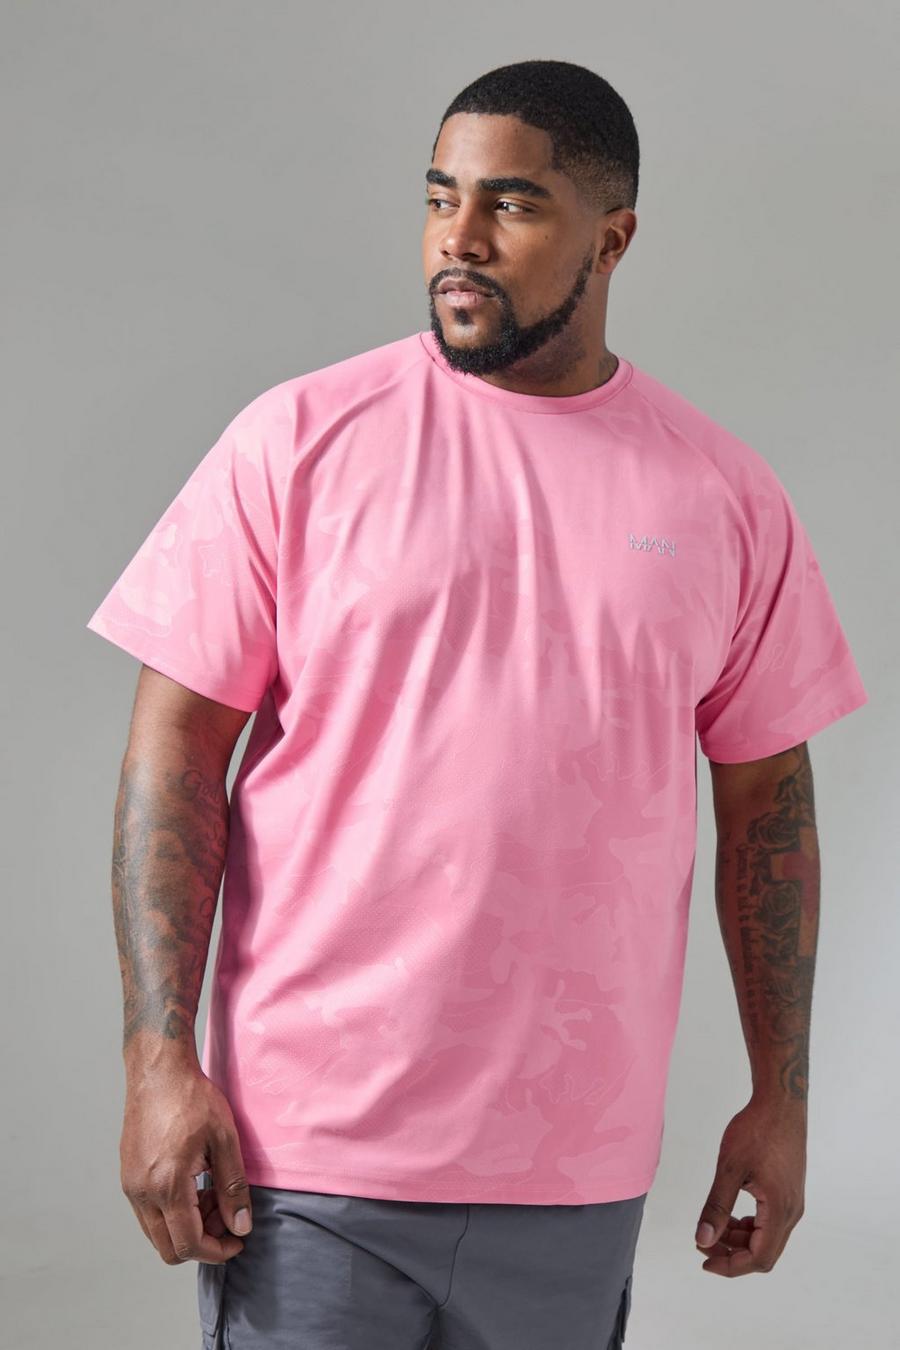 Plus Man Active Camouflage Raglan Performance T-Shirt, Pink